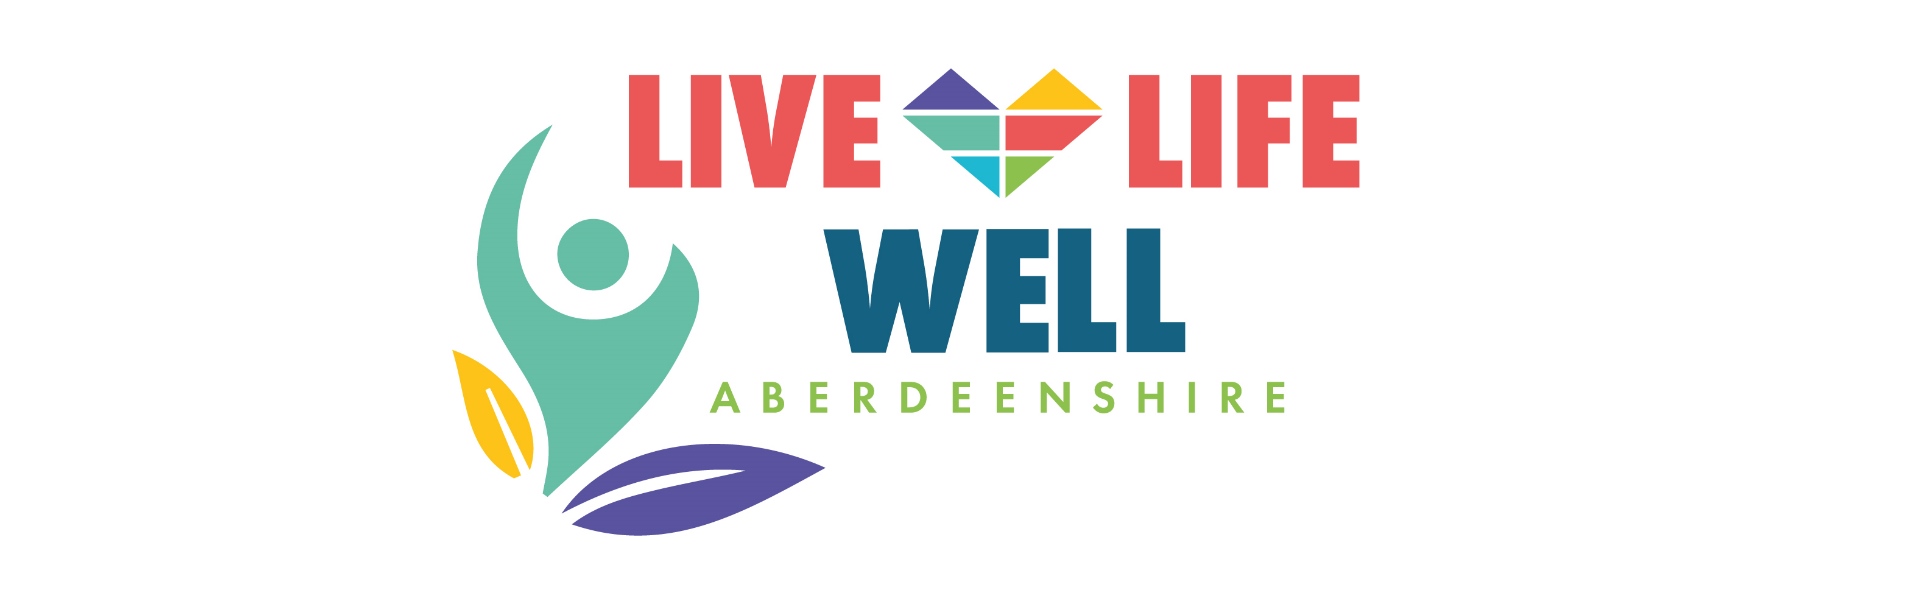 Live Life Well Aberdeenshire logo